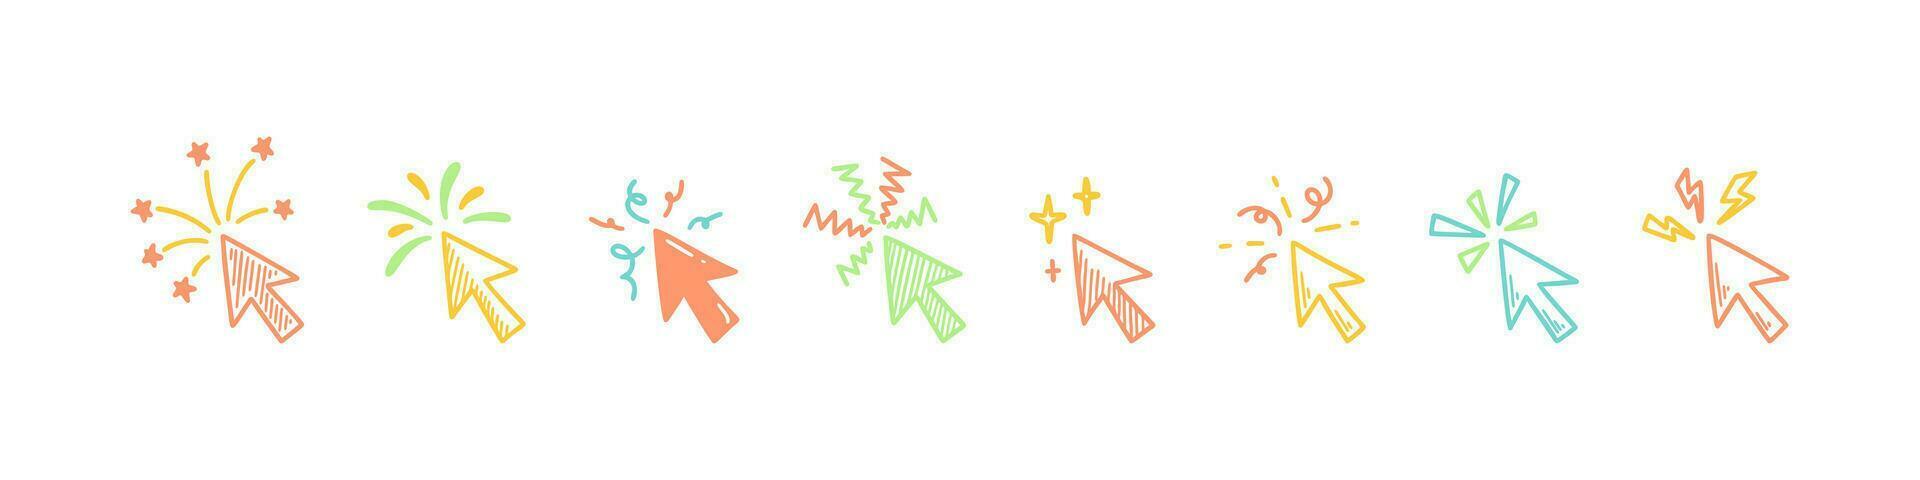 Urlaub Feuerwerk, funkeln und funkeln Pfeil Zeiger. Gekritzel klicken Mauszeiger. fröhlich Weihnachten und glücklich Neu Jahr Design Element. festlich skizzieren Vektor Illustration